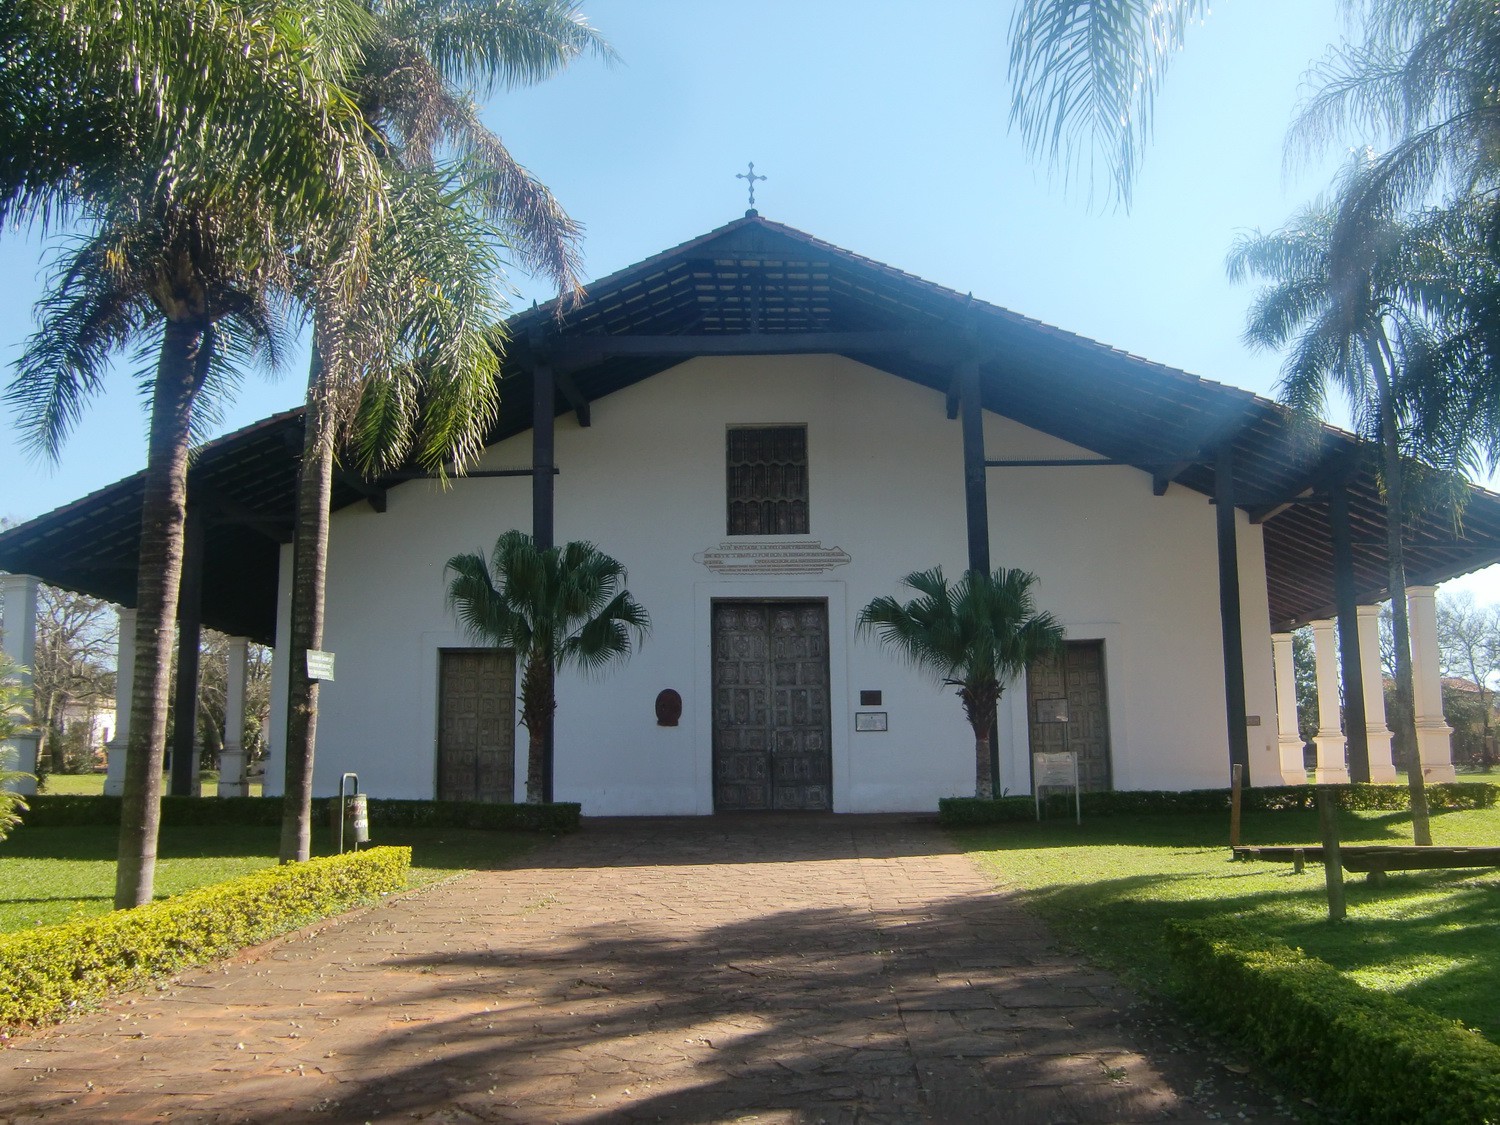 Franciscan church in Yaguaron, 50km northeast of Asuncion